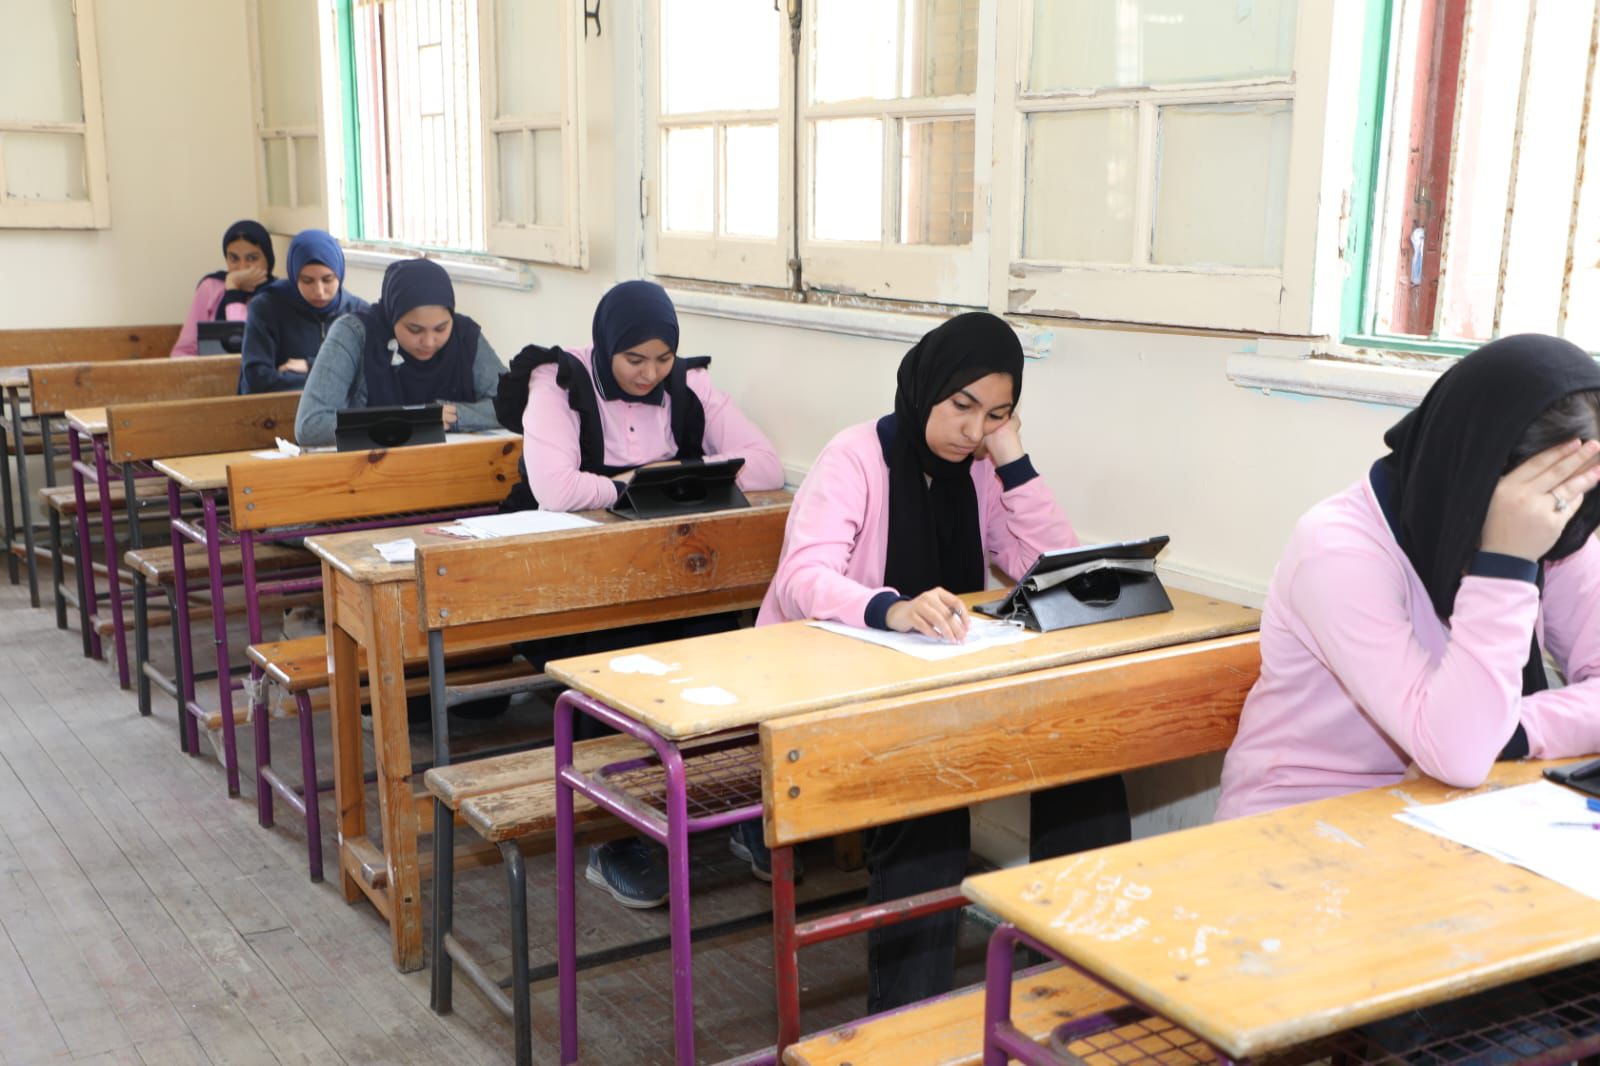 الإمتحانات بمدرسة بورسعيد الثانوية بنات